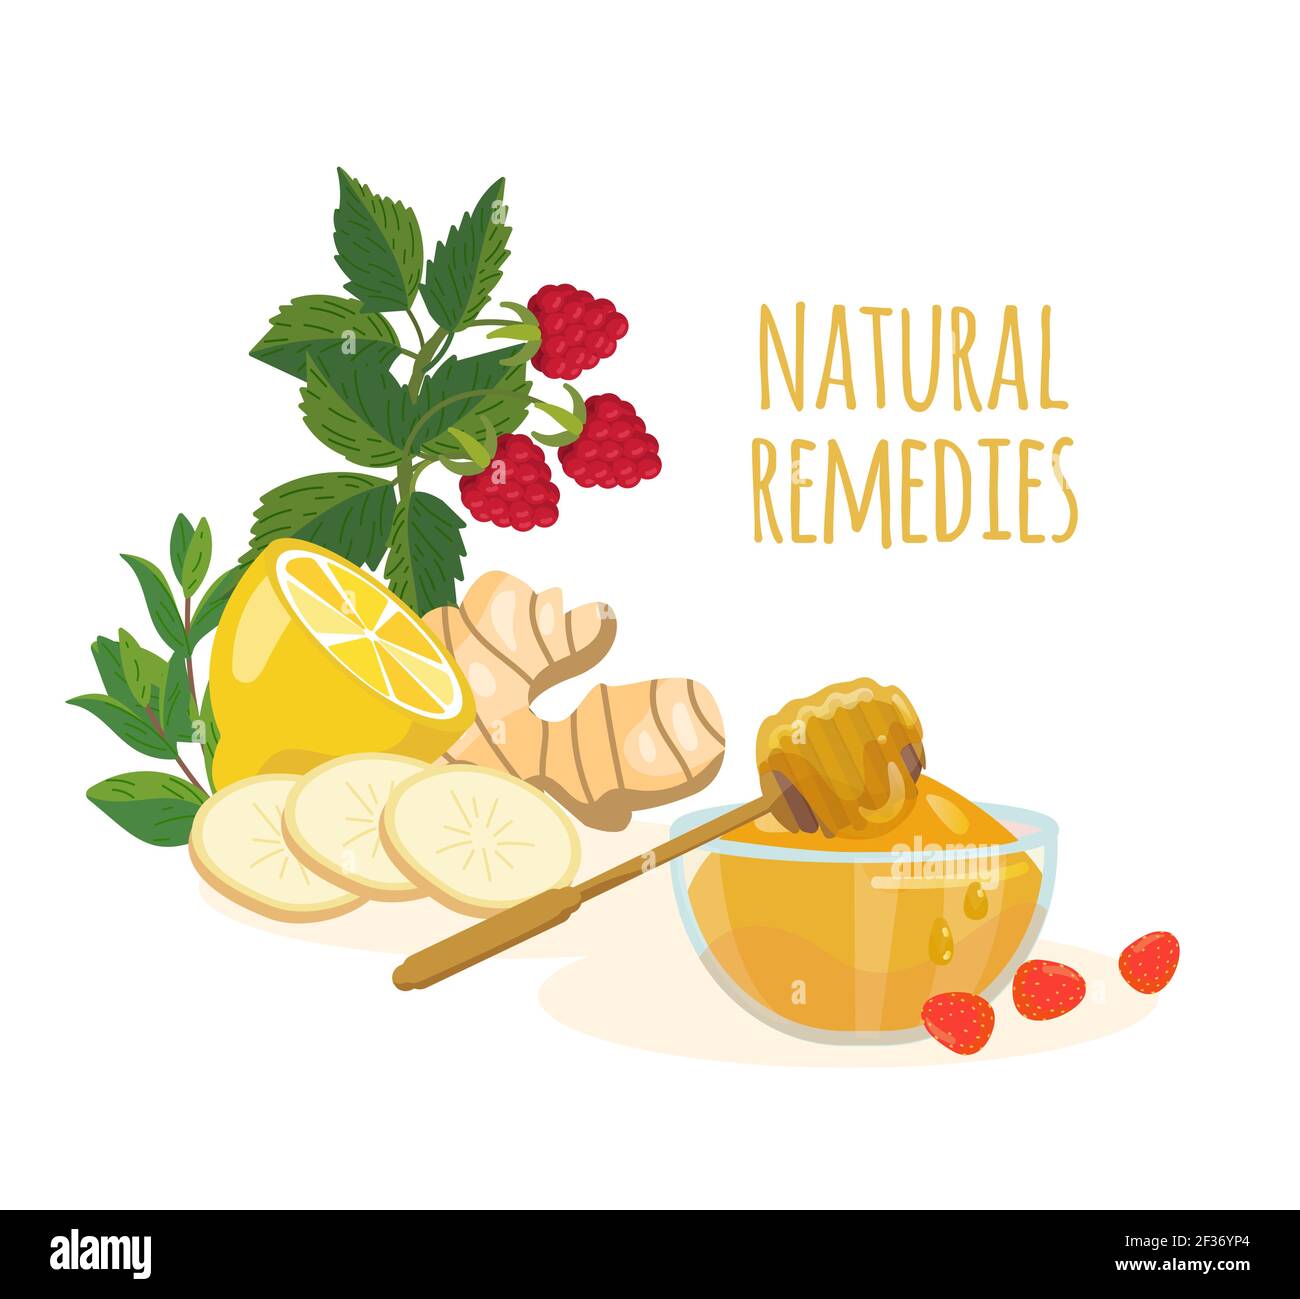 Remedios naturales ingredientes limón, jengibre, menta, frambuesa, miel. Concepto de medicina popular. Tratamientos en el hogar para resfriados, gripe, secreción nasal, fiebre e inmunidad Ilustración del Vector